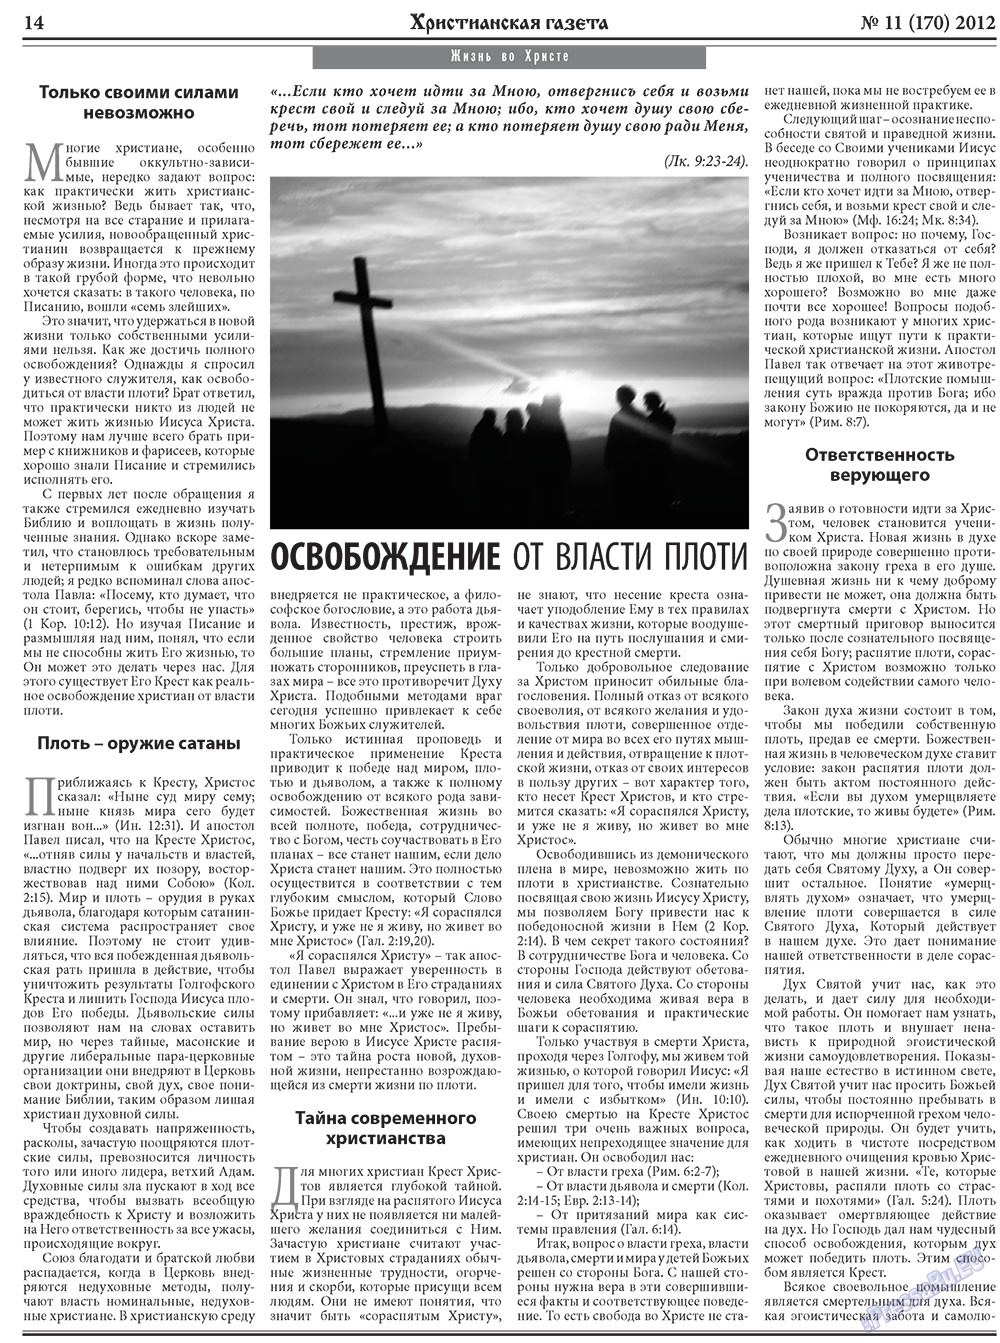 Христианская газета, газета. 2012 №11 стр.22